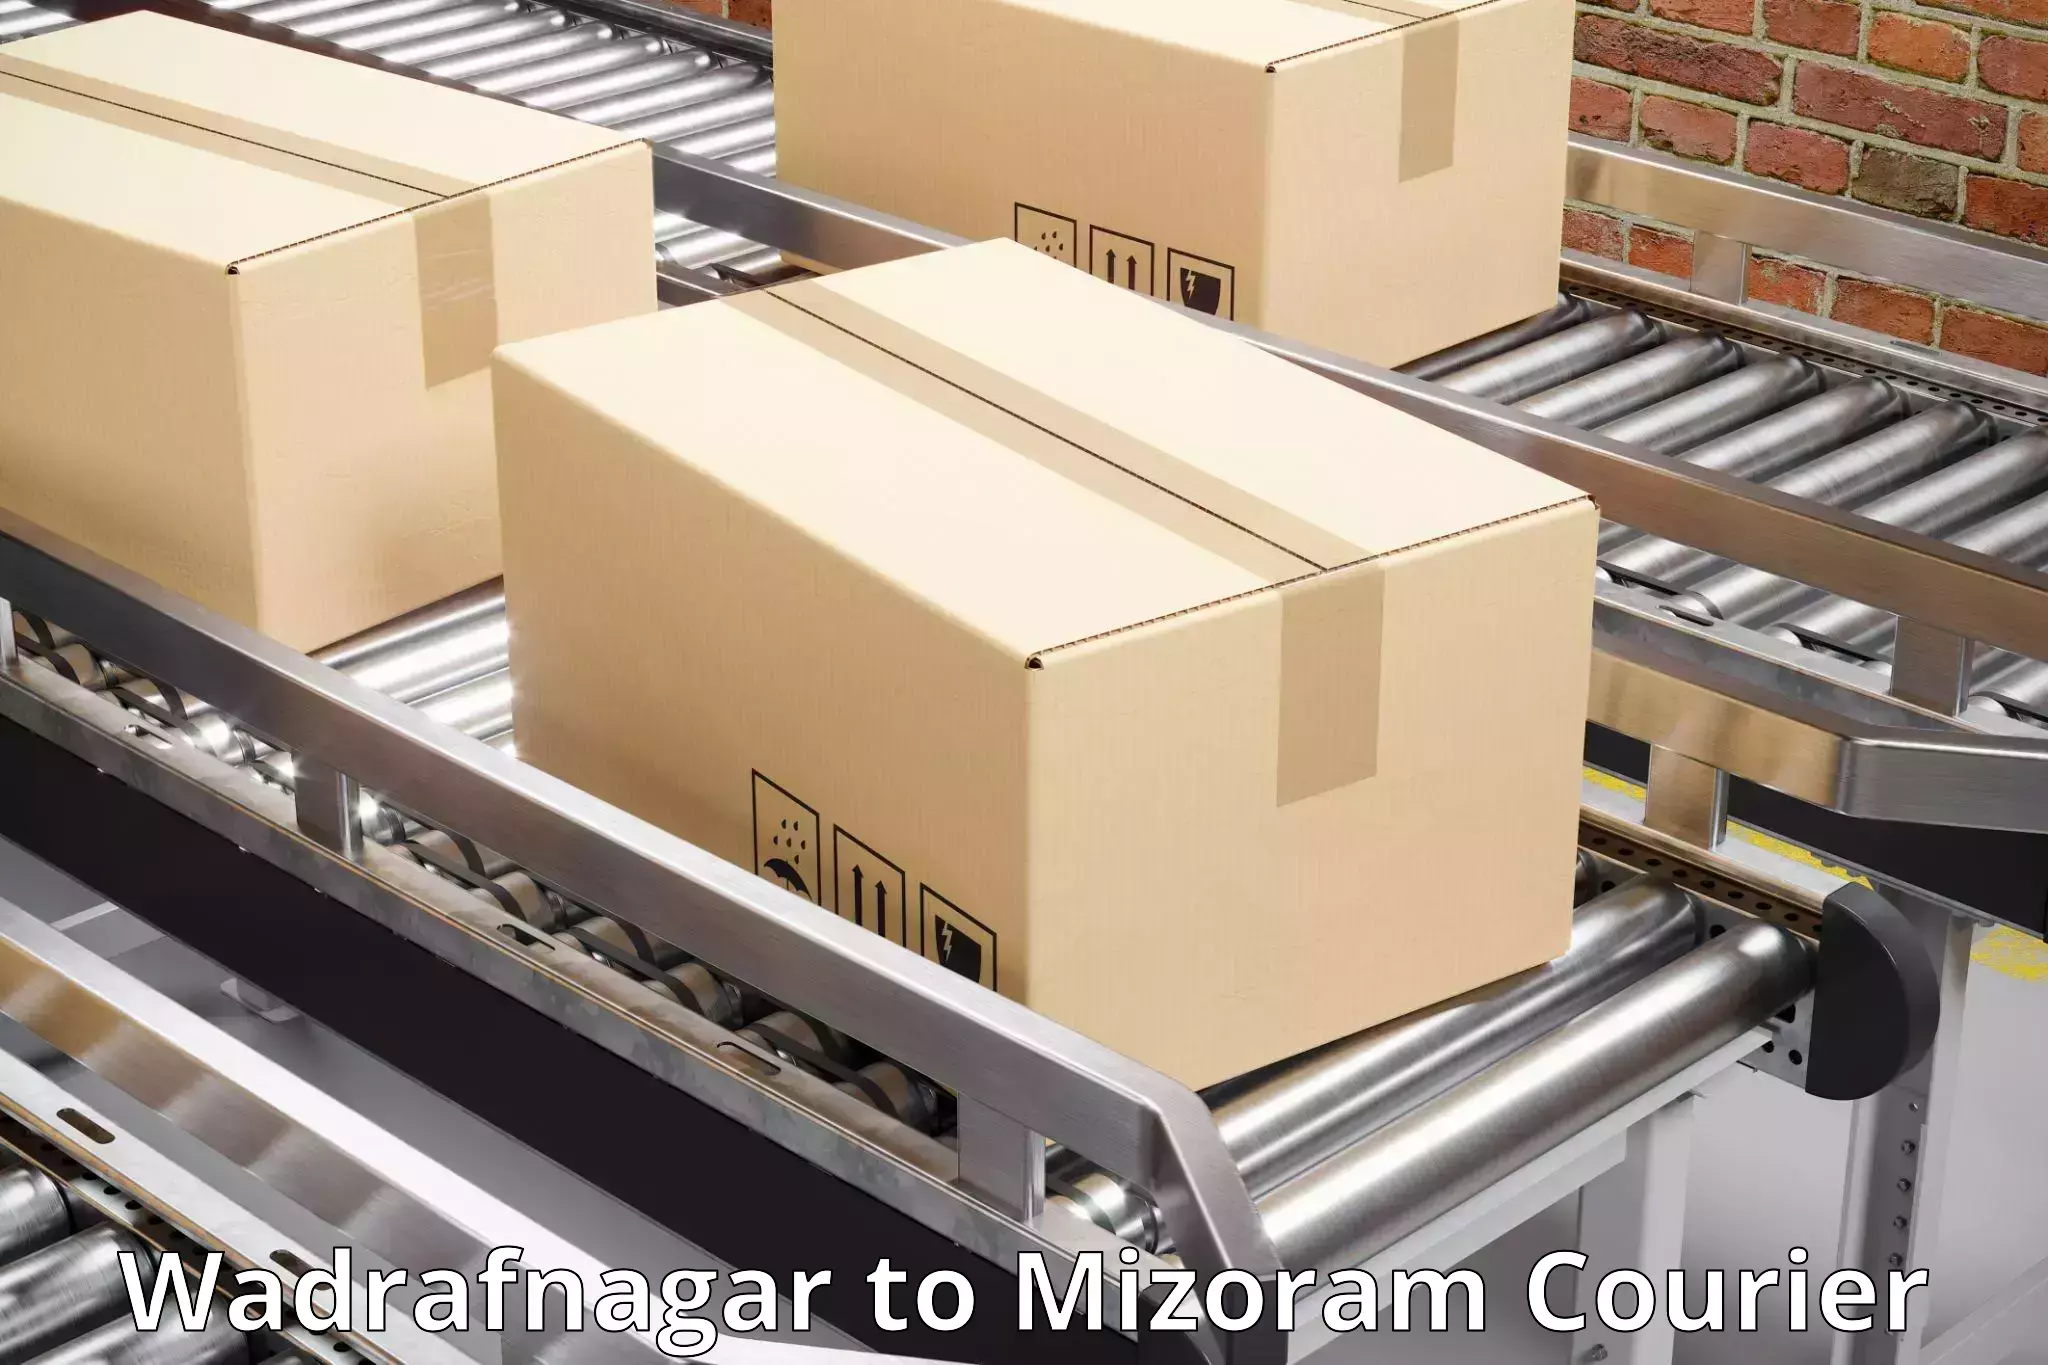 Smart logistics strategies Wadrafnagar to NIT Aizawl